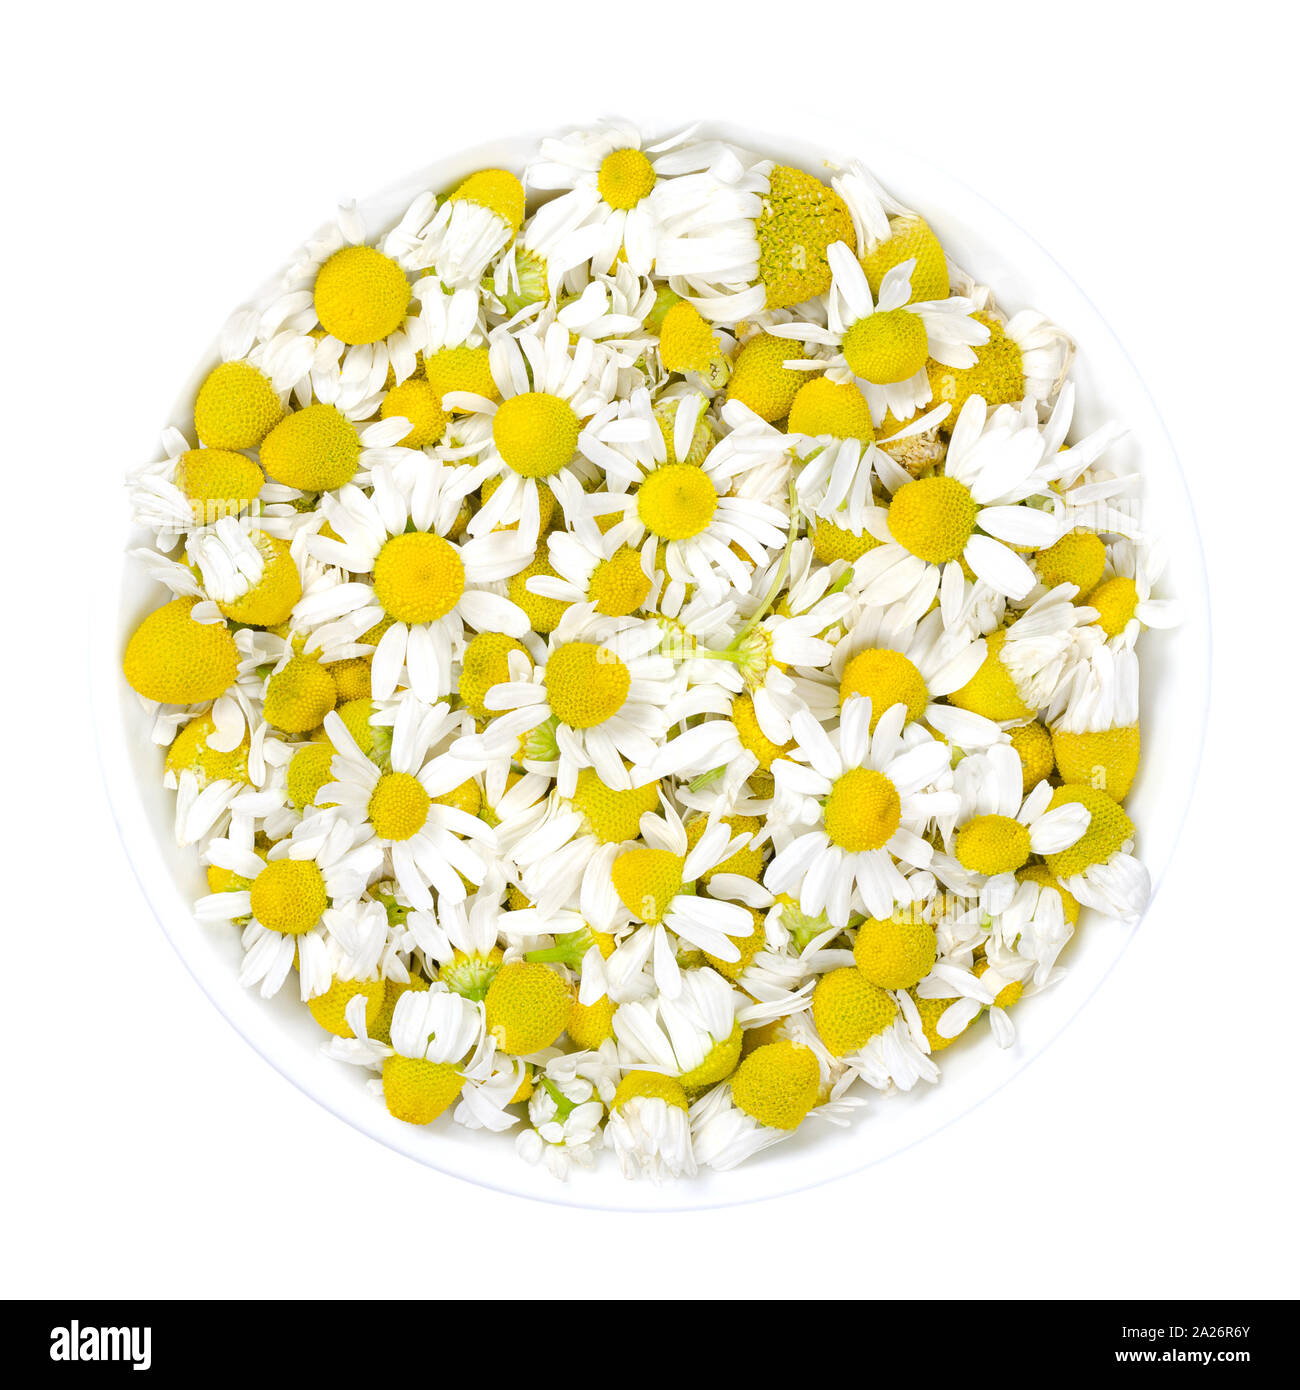 Fleurs de camomille dans un bol blanc. Des fleurs de camomille, Matricaria chamomilla, utilisé pour des infusions et en médecine traditionnelle. Banque D'Images